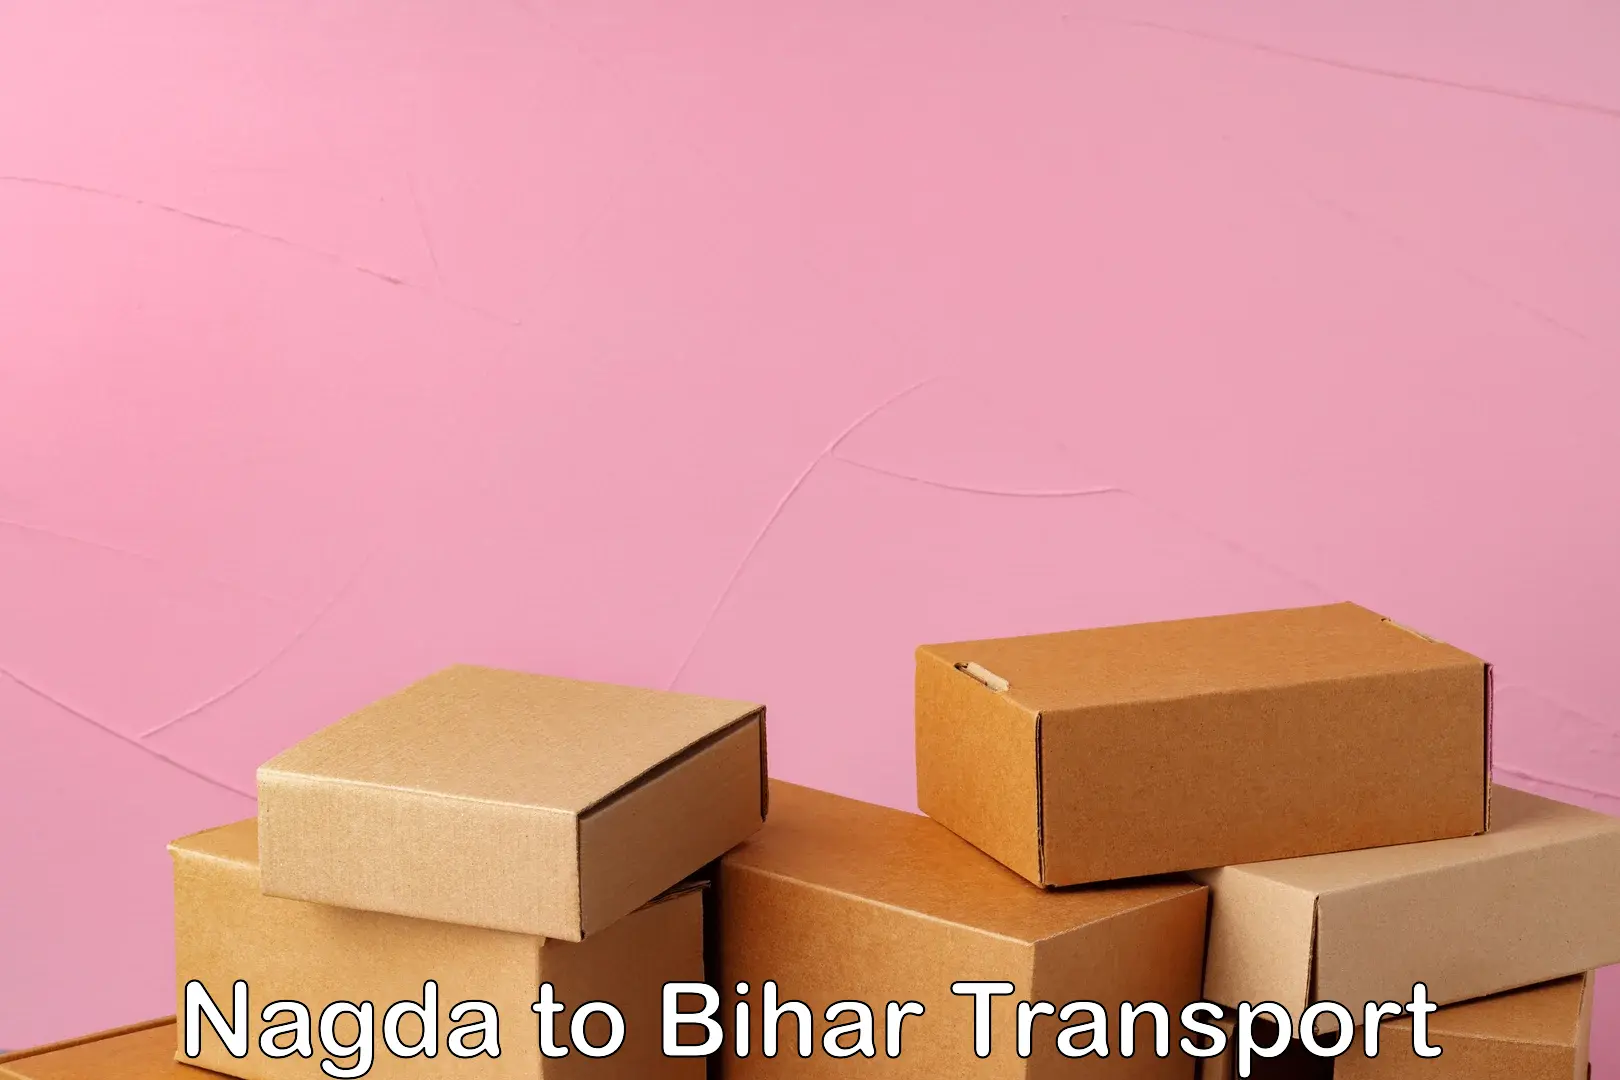 Furniture transport service Nagda to Munger